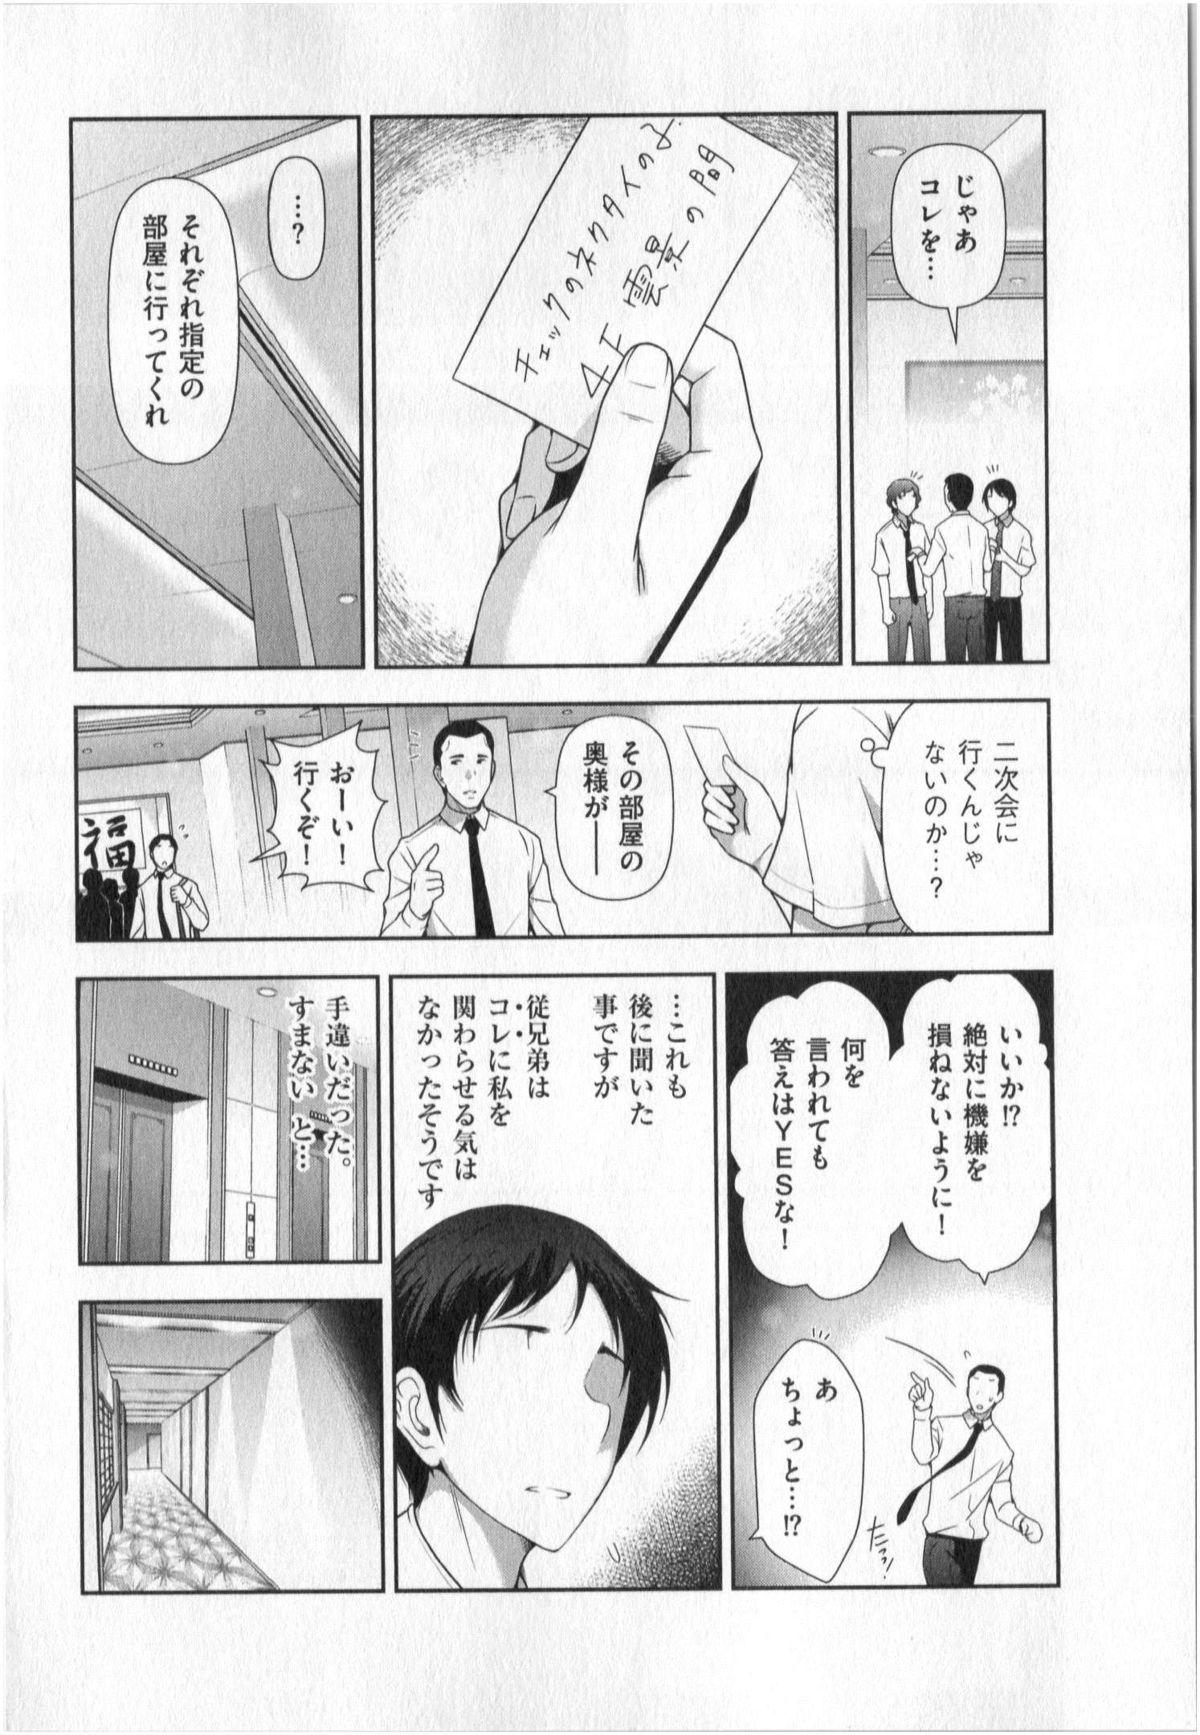 Yonimo Ecchi na Toshidensetsu vol. 01 71